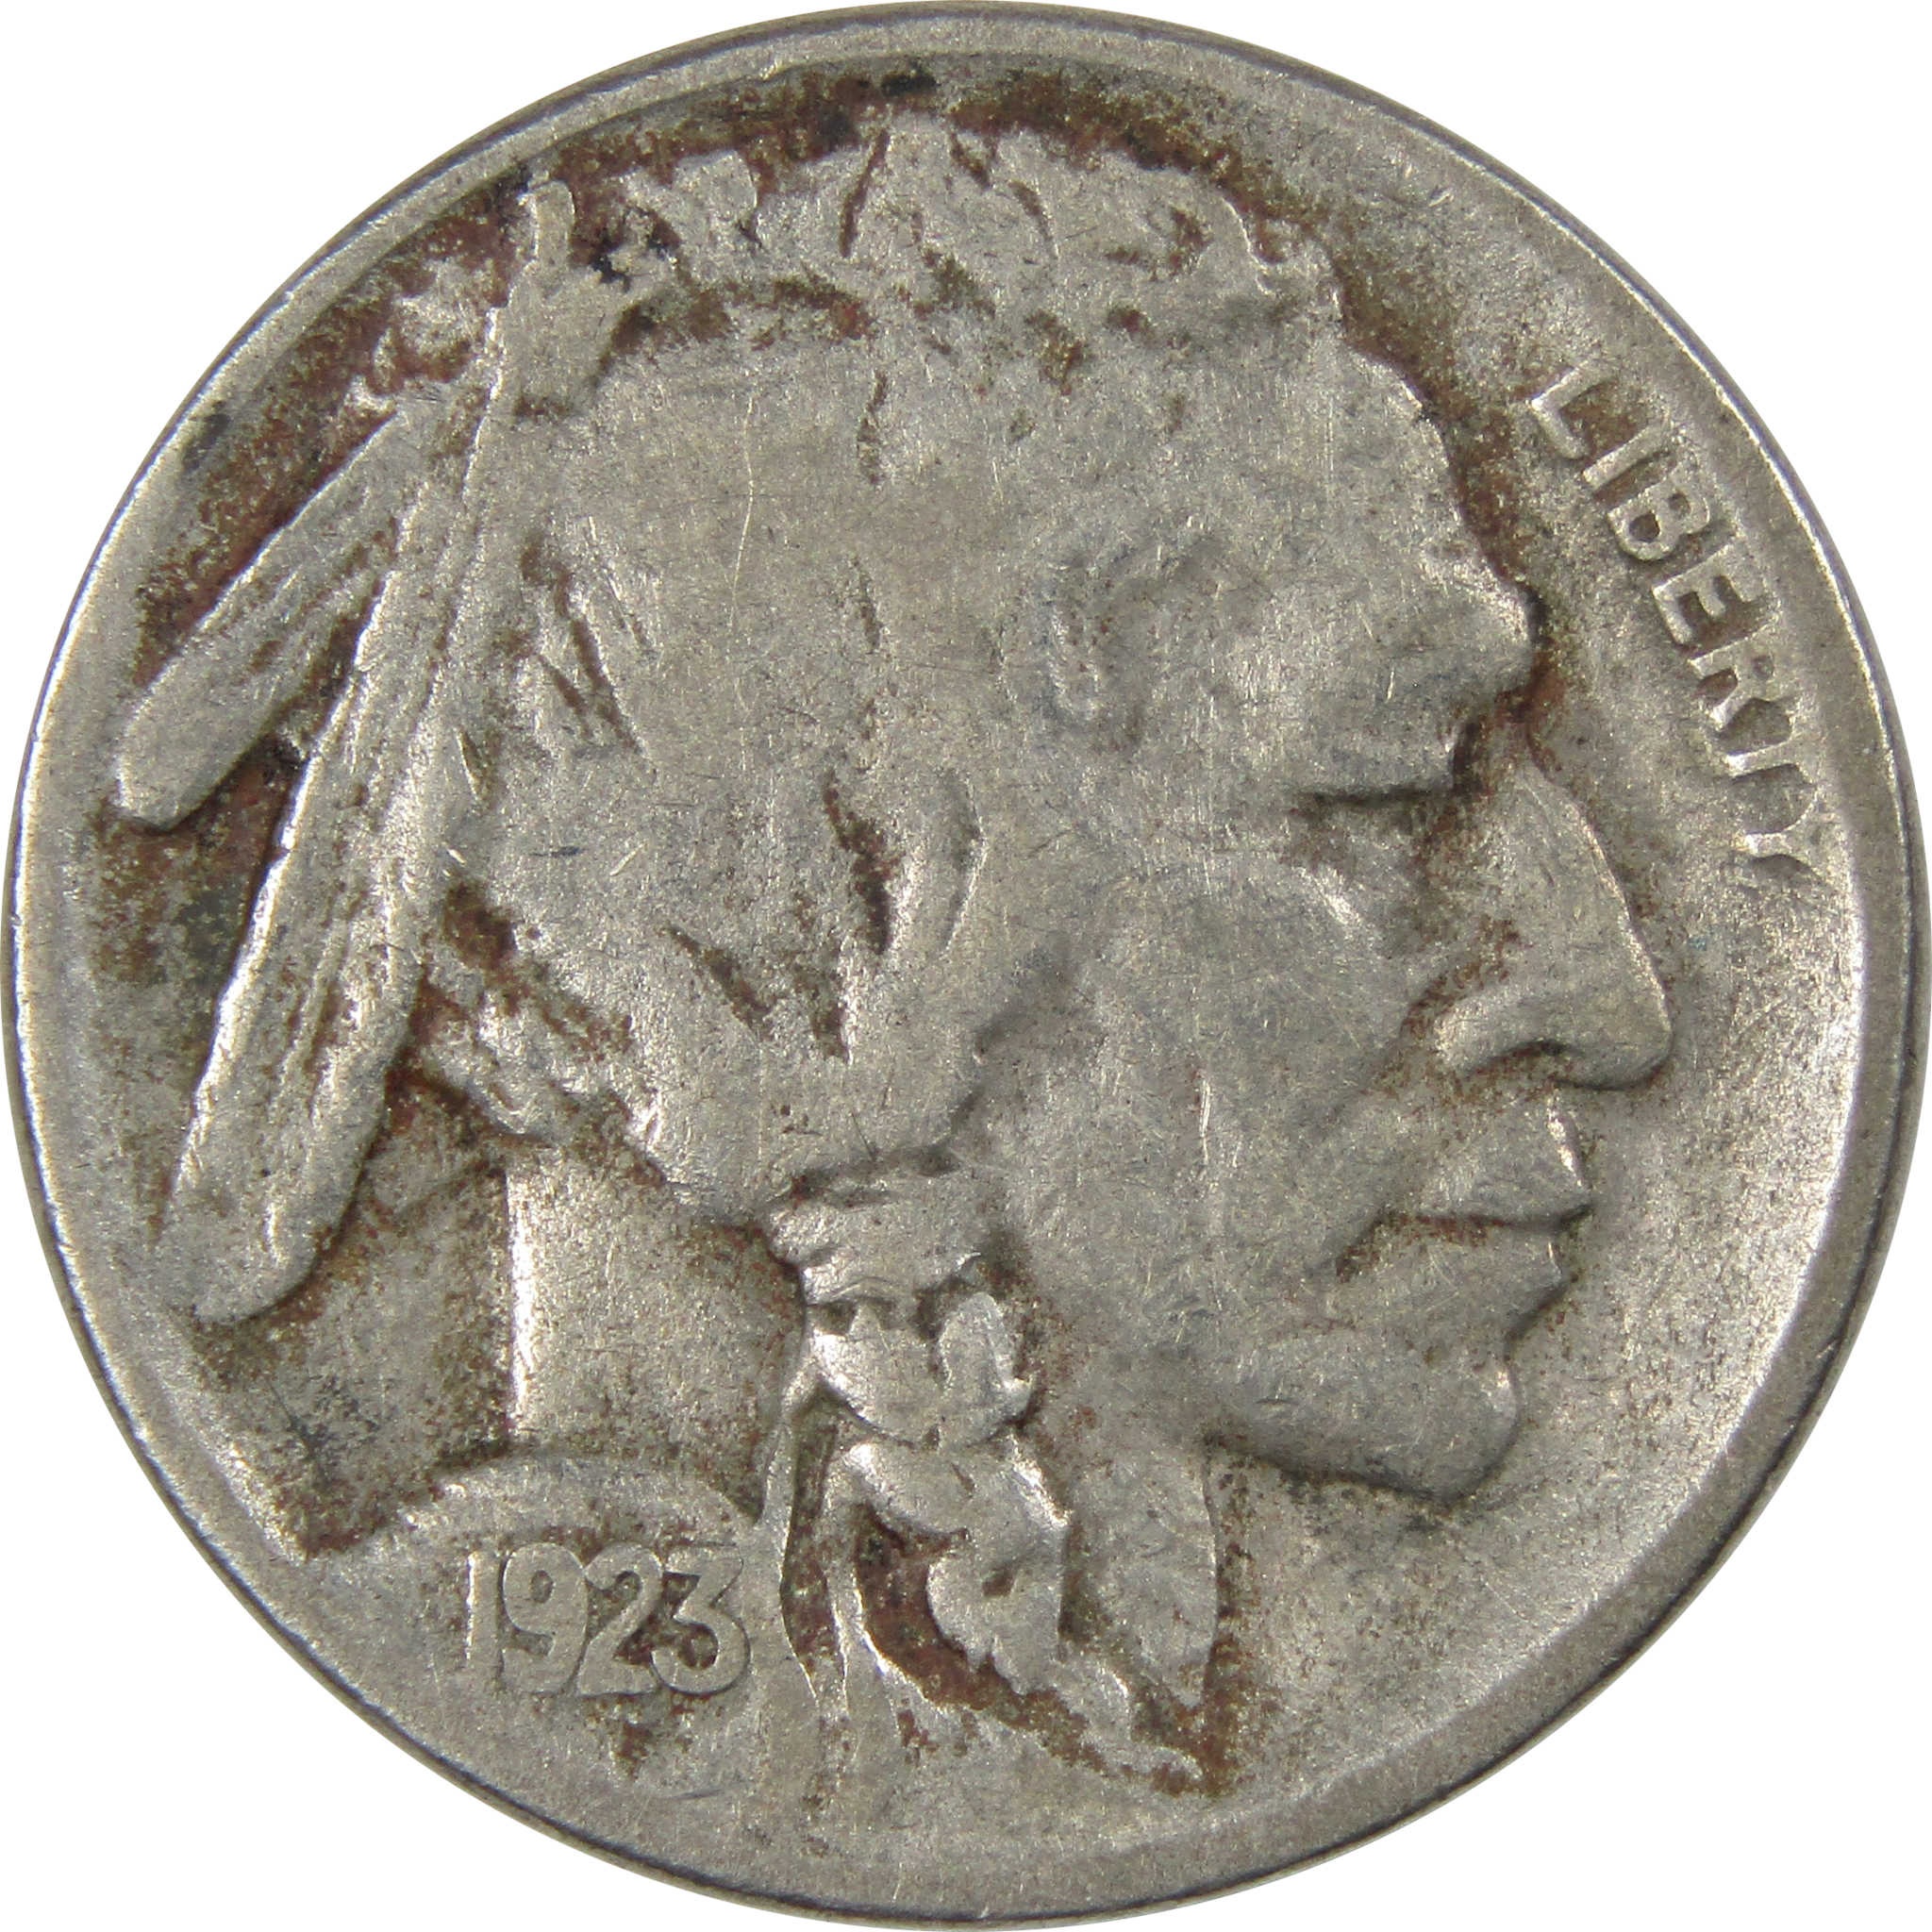 1923 S Indian Head Buffalo Nickel VF Very Fine 5c SKU:IPC6021